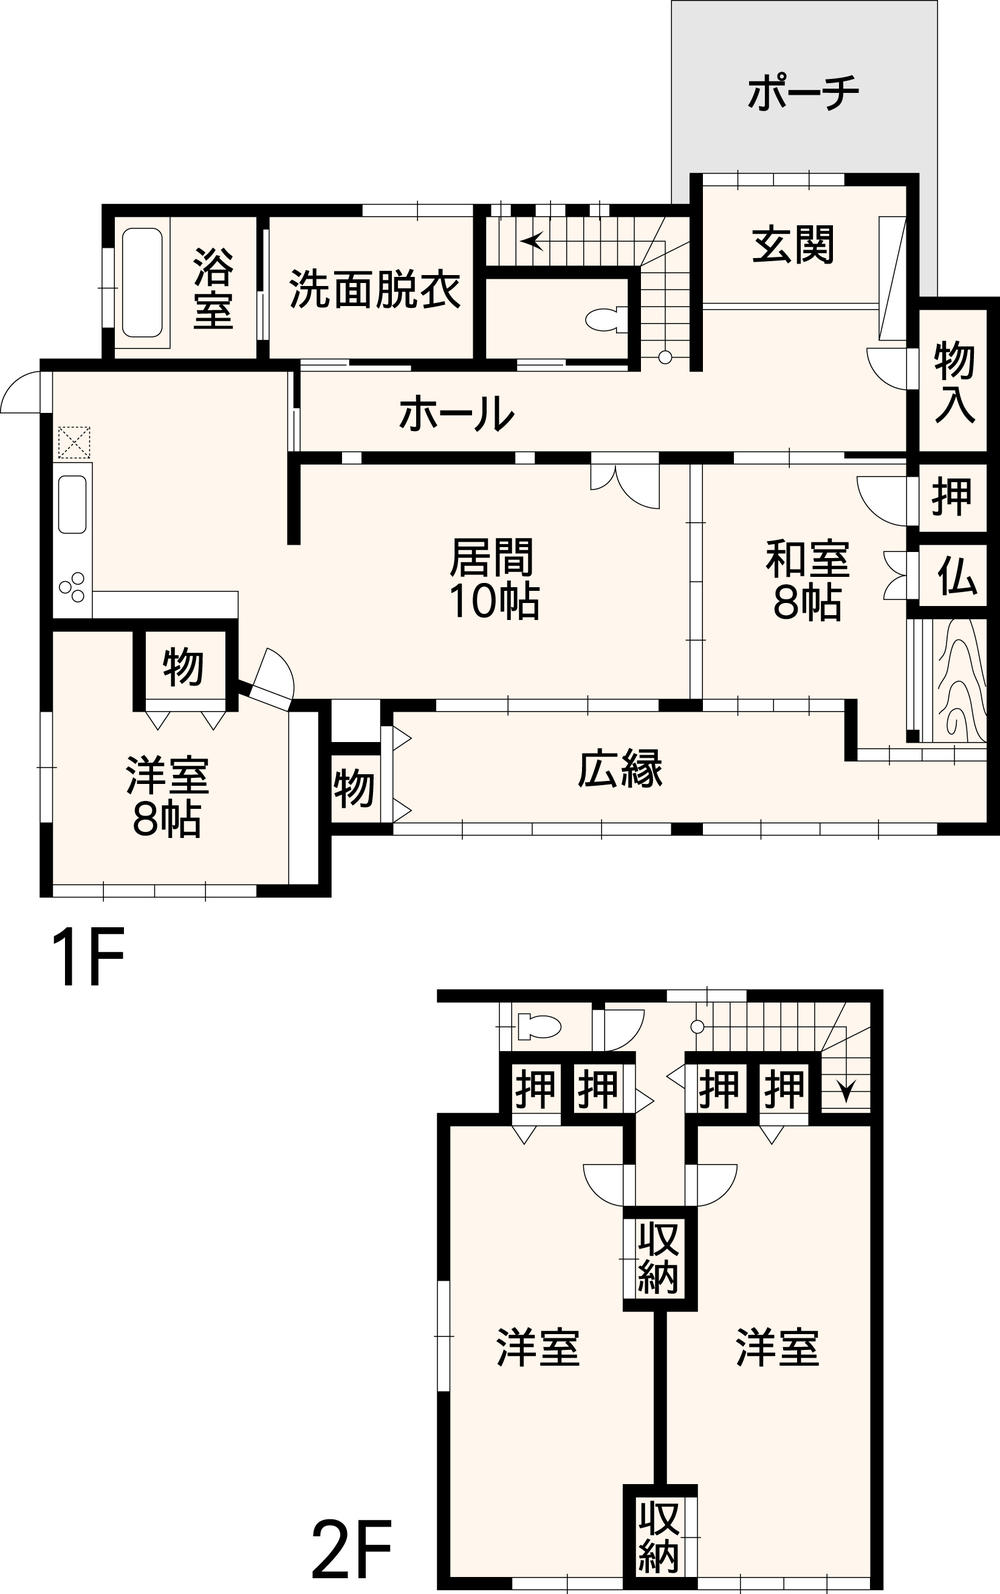 Floor plan. 46 million yen, 4LDK, Land area 611 sq m , Building area 165.81 sq m